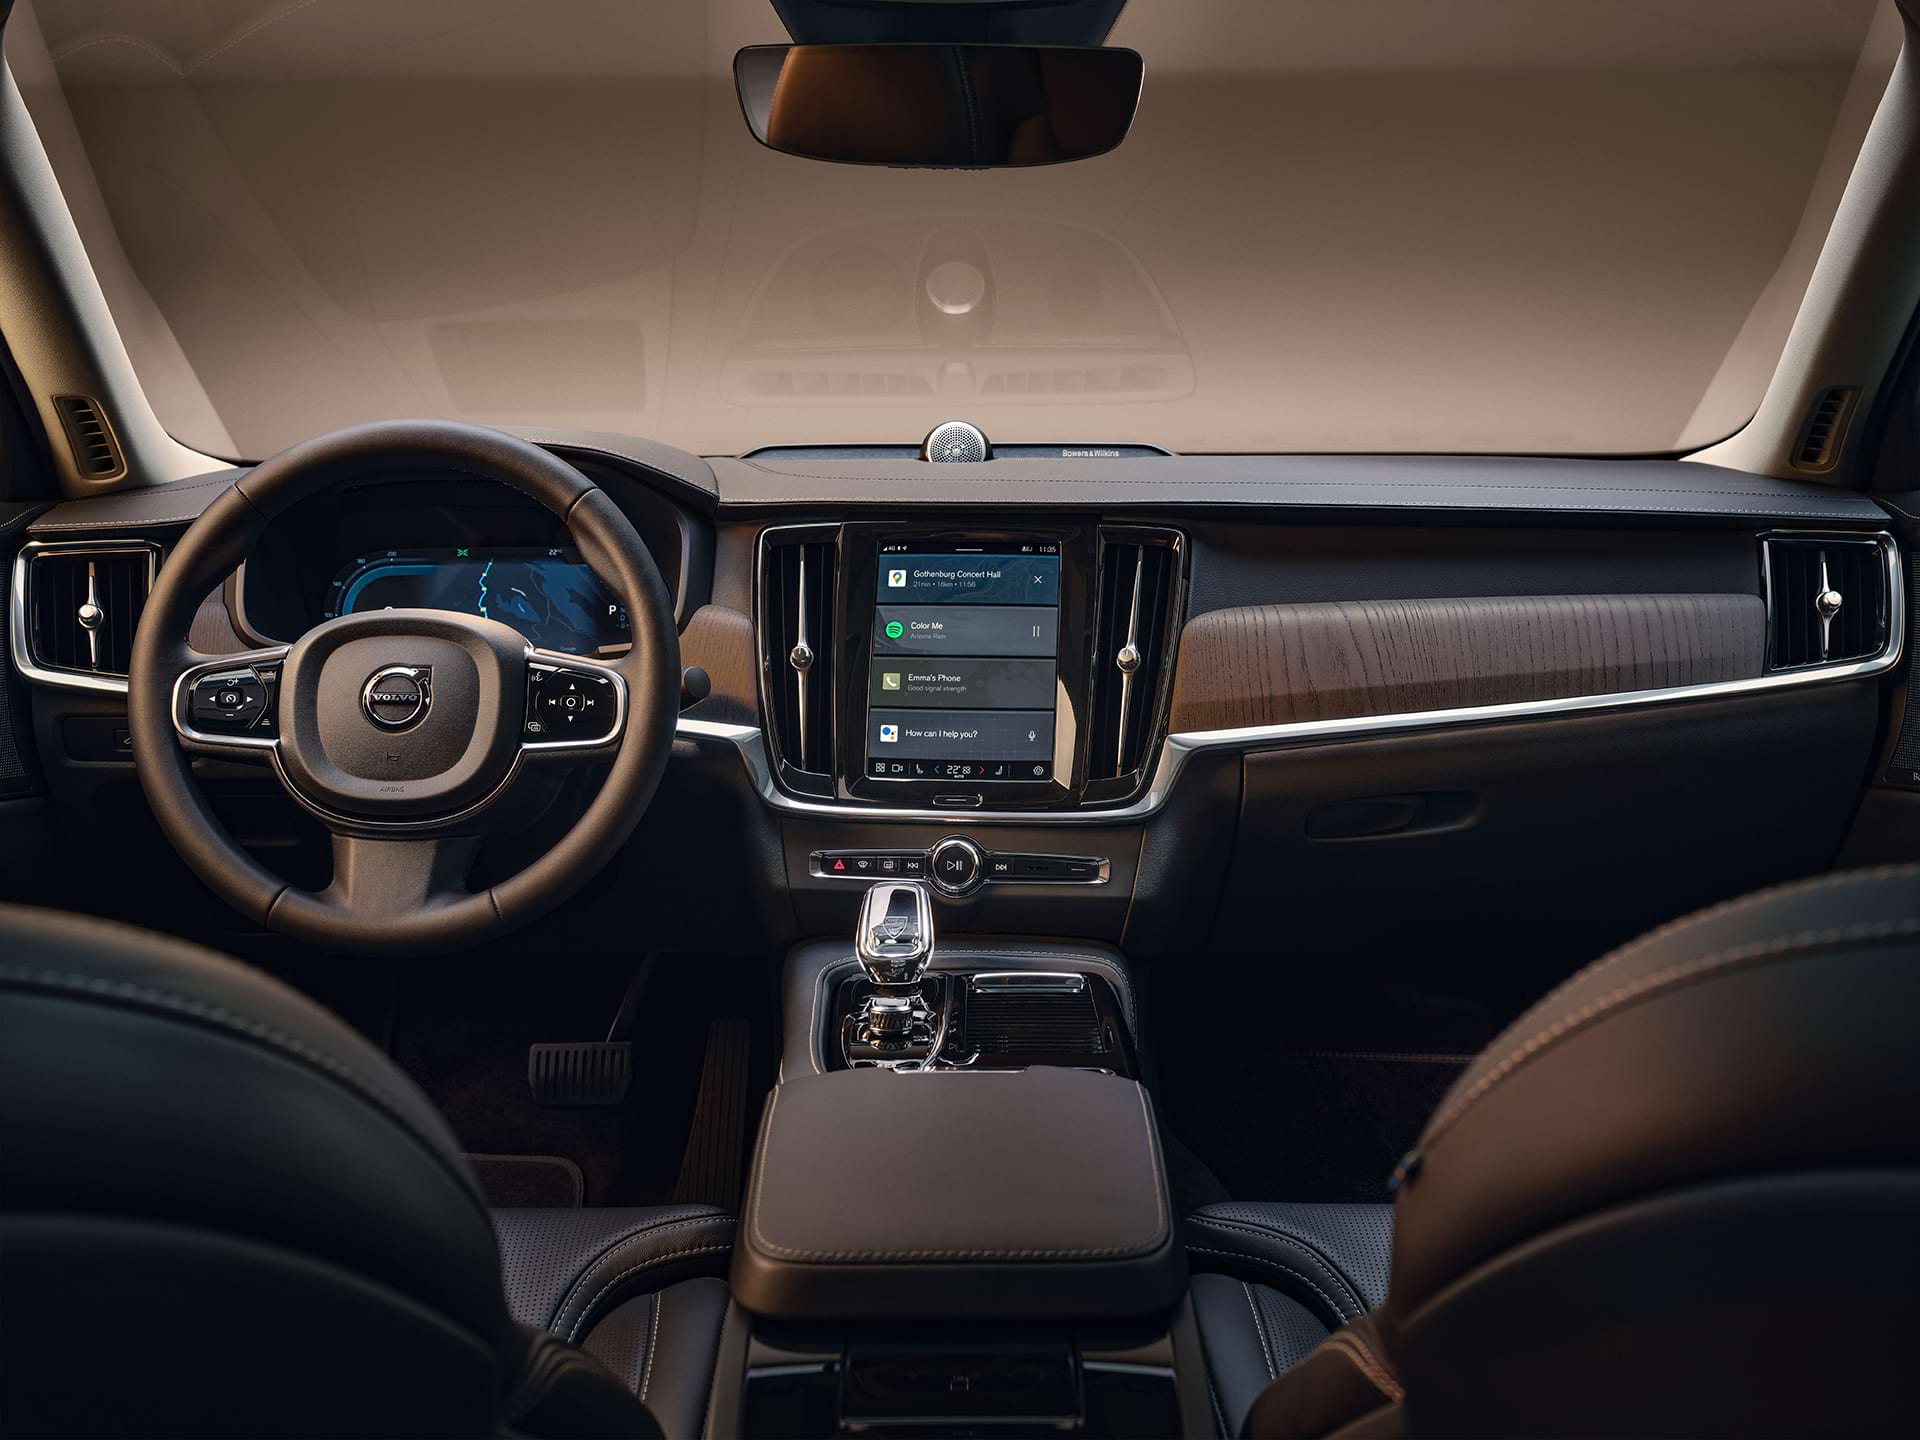 Volvo სედანის ხელსაწყოთა პანელი, ცენტრალური ეკრანი, გადაცემათა გადამრთველი, მძღოლის ეკრანი და საჭე.